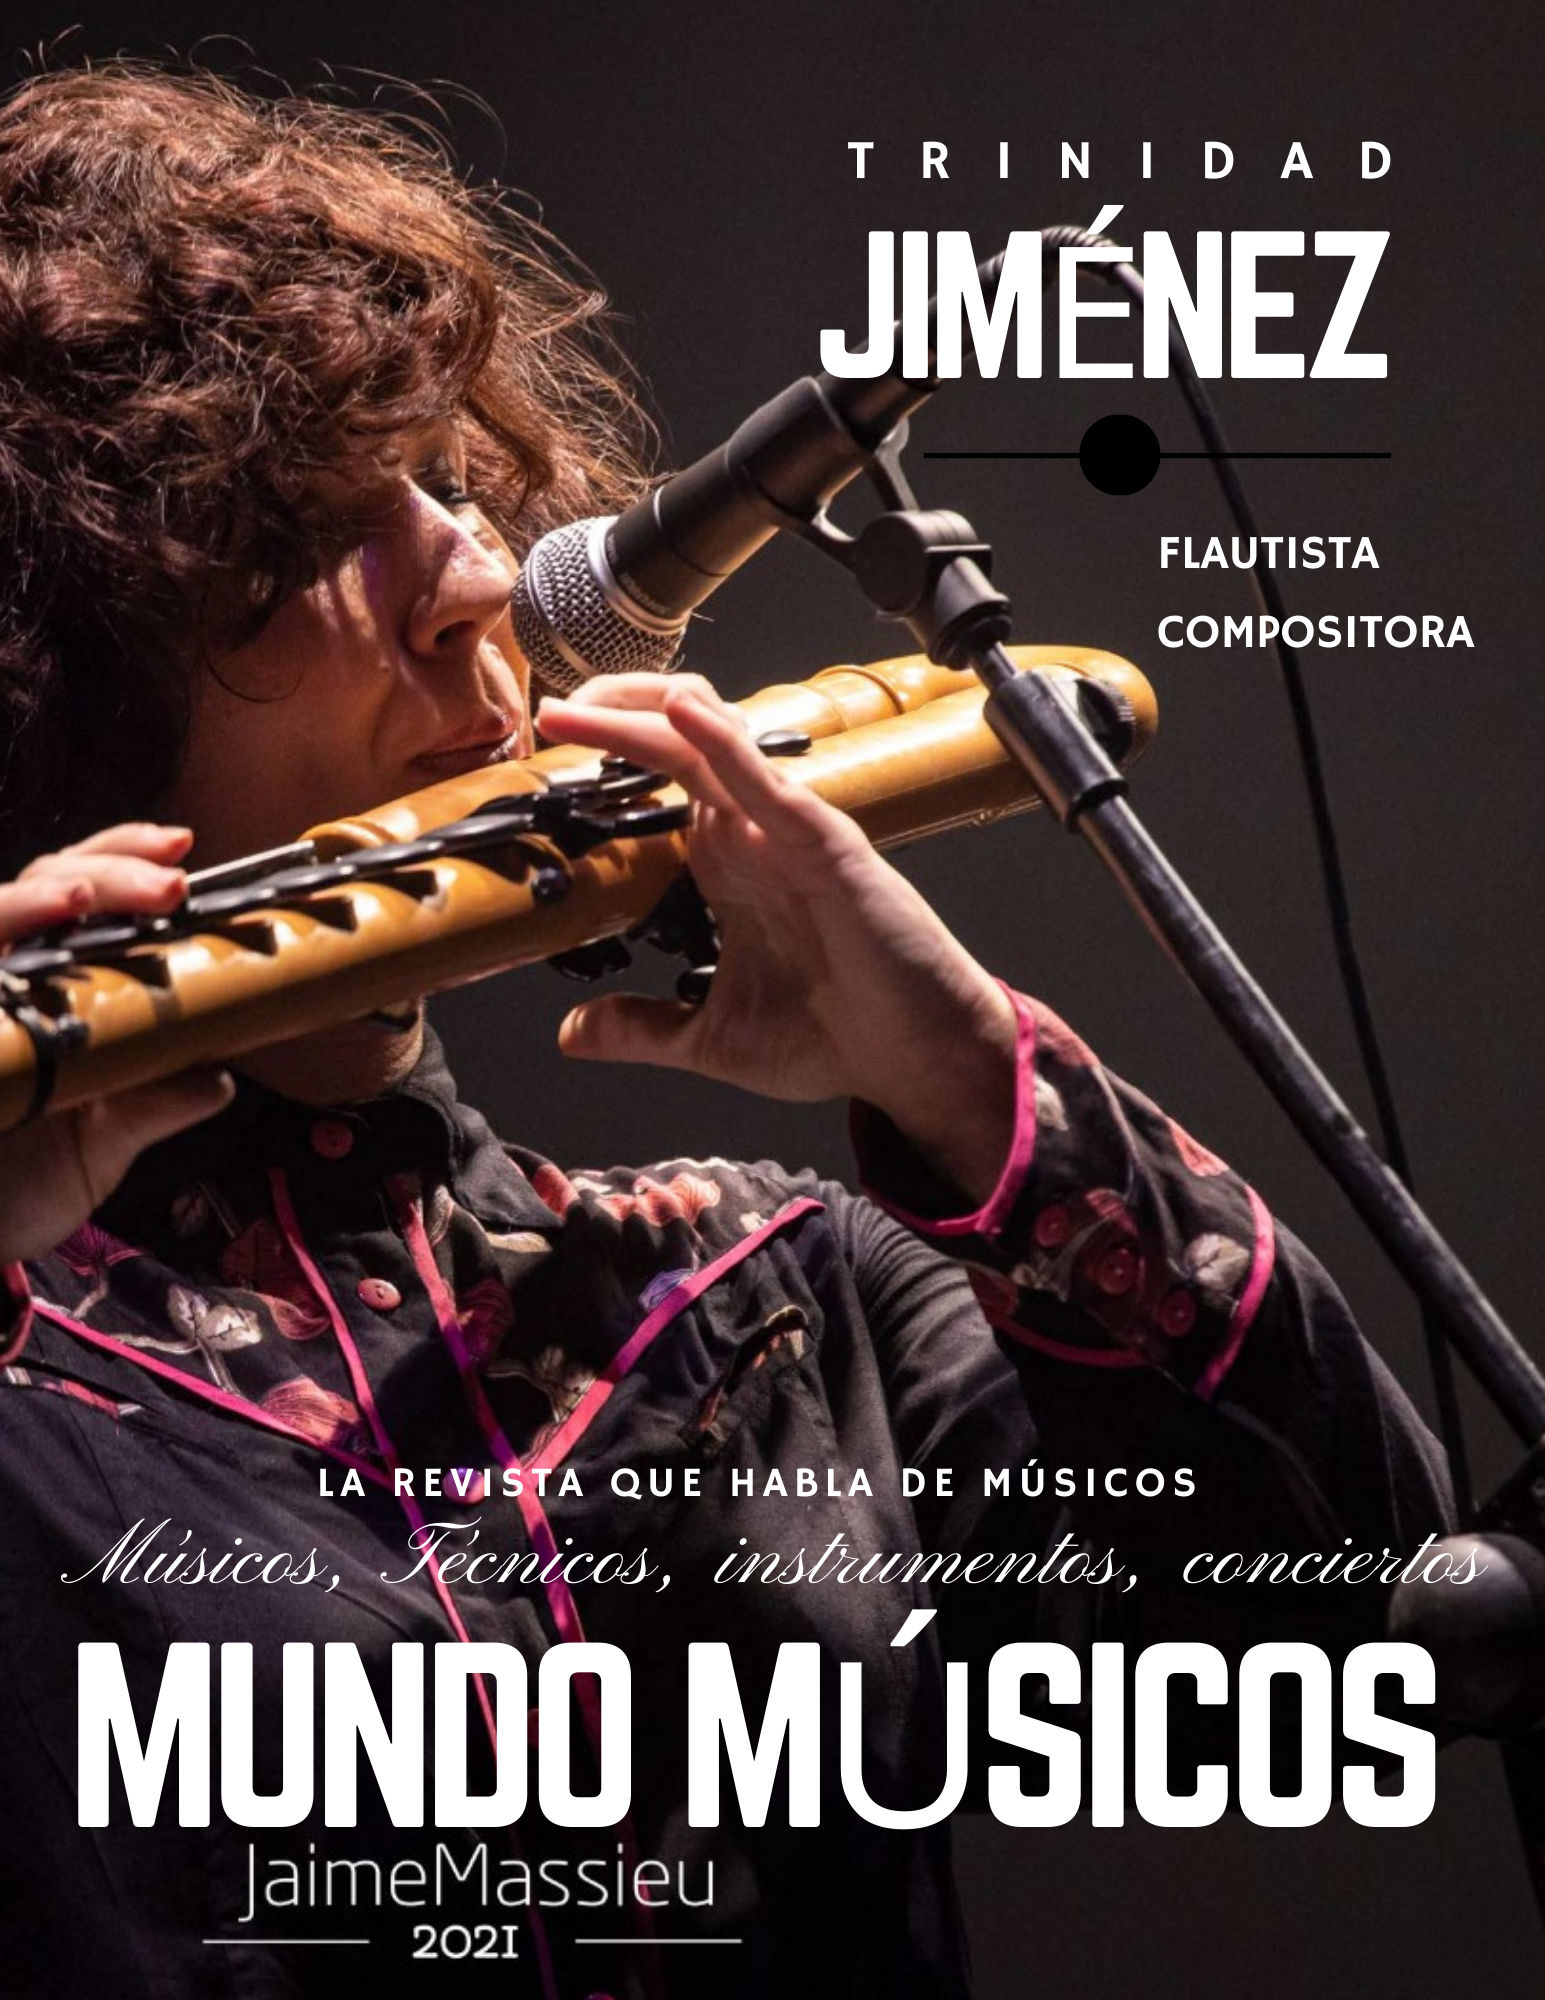 TRINIDAD JIMENEZ MUSICO